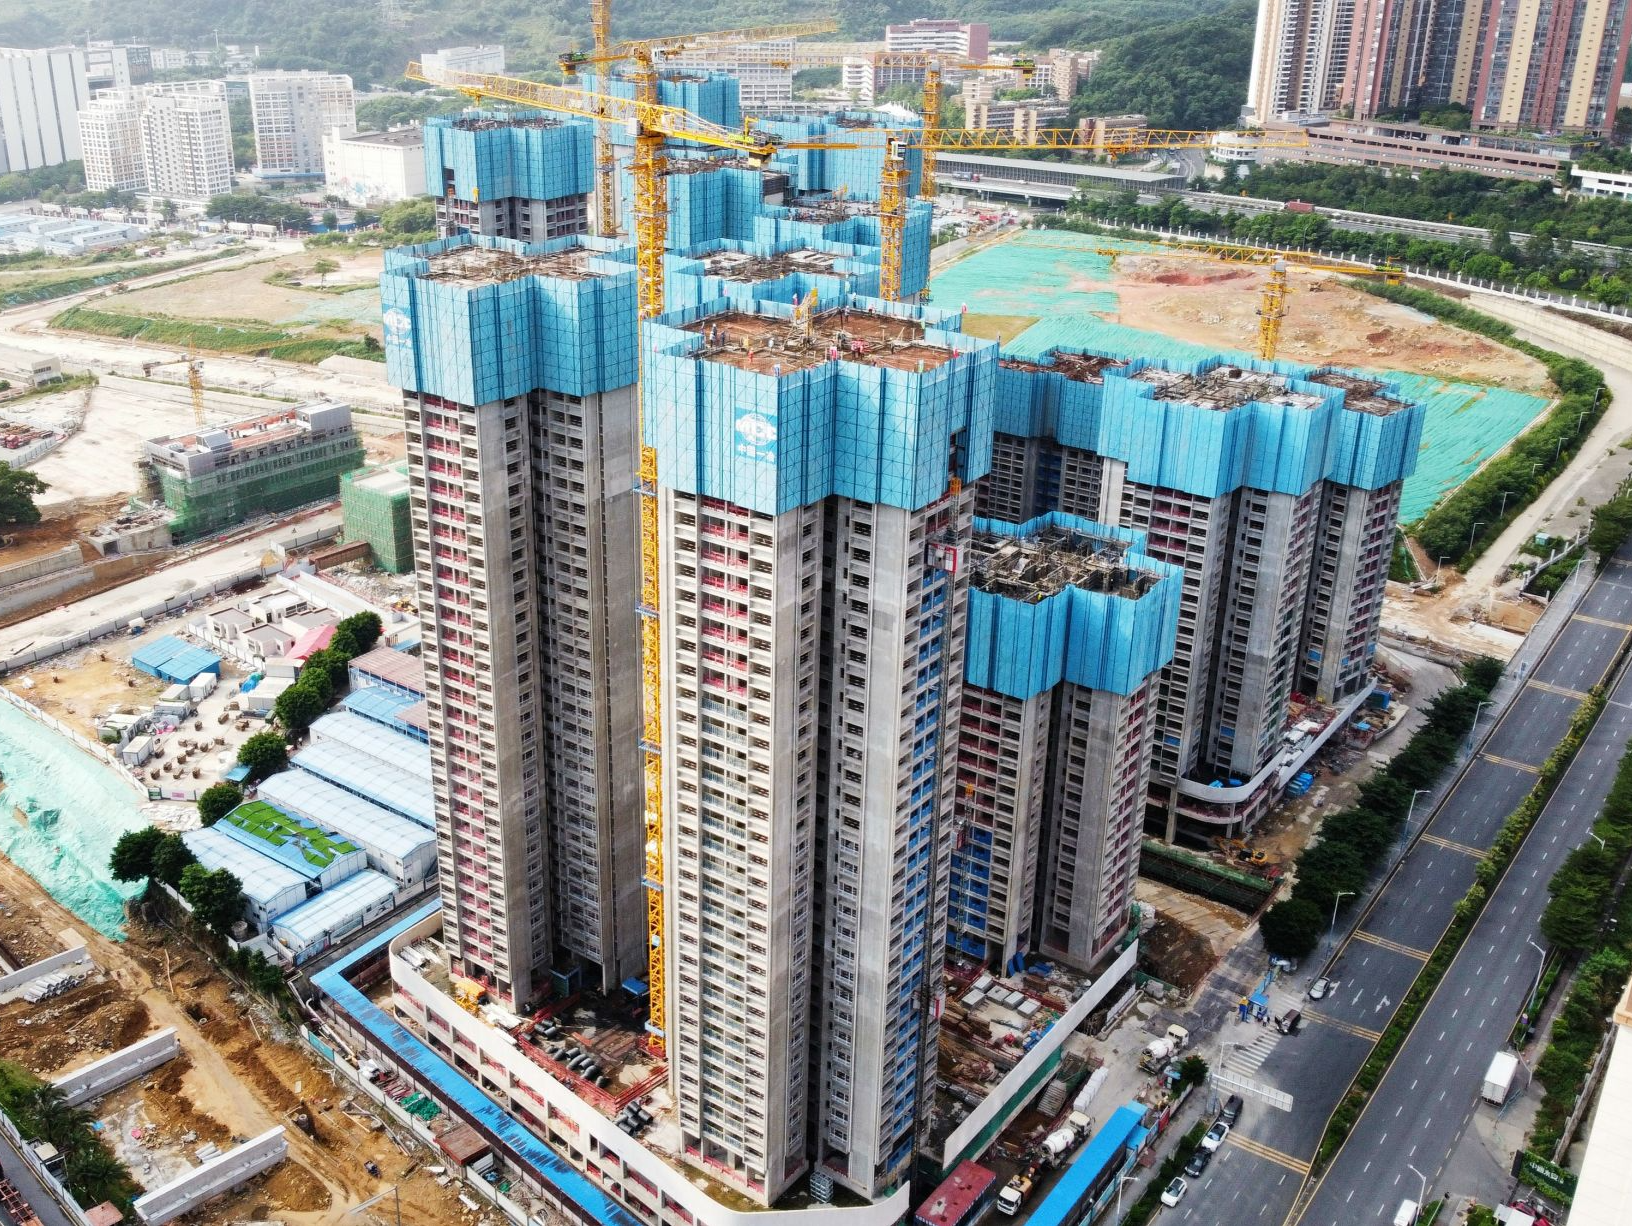 提供超2500套精装安居保障房 深圳这一项目首栋塔楼封顶